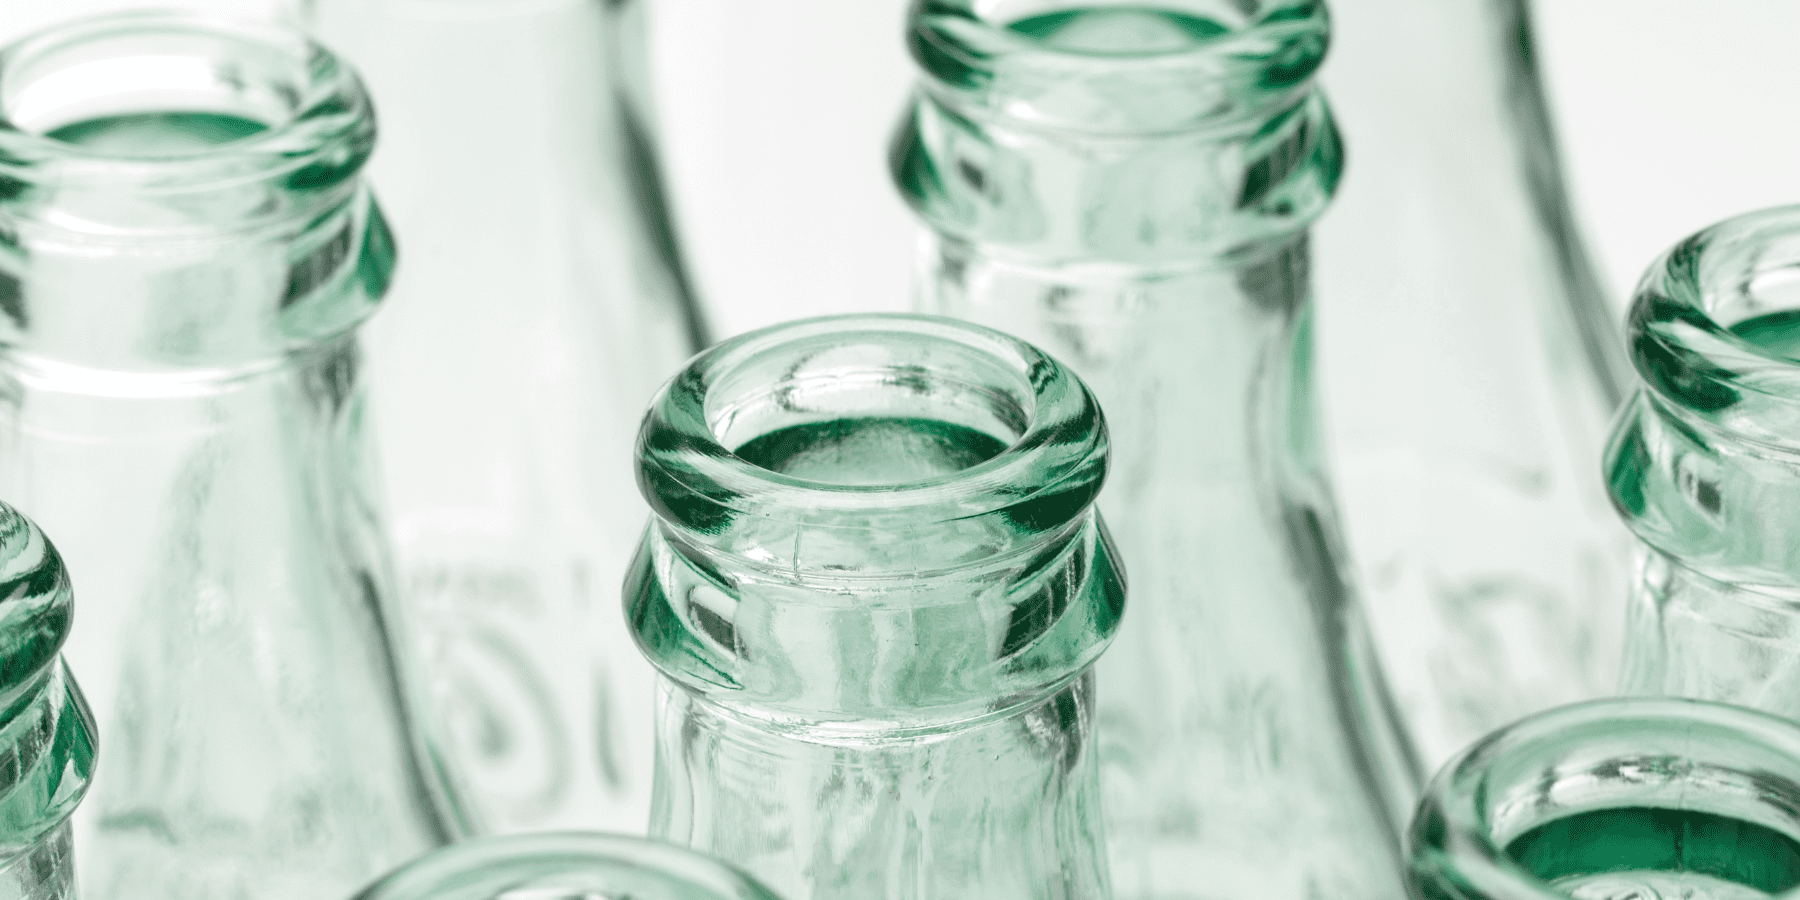 Kaucja szklanych butelek w Polsce przyniesie ponad 150 milionów zł dochodu rocznie